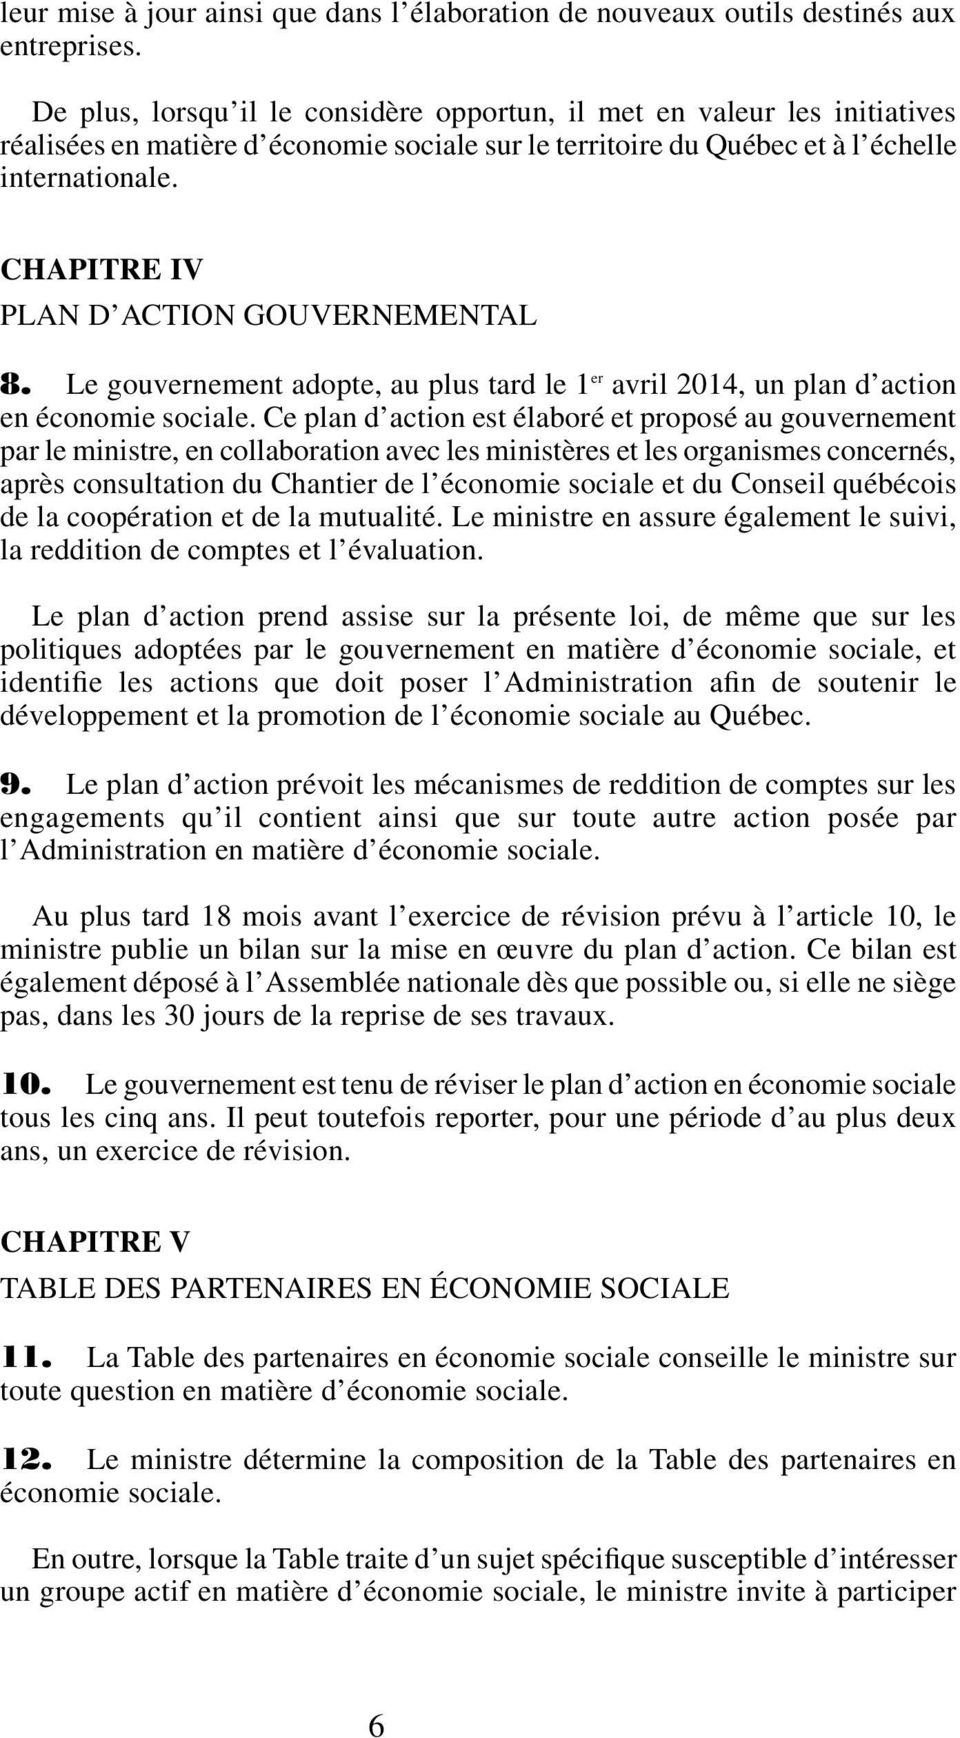 chapitre IV plan d action gouvernemental 8. Le gouvernement adopte, au plus tard le 1 er avril 2014, un plan d action en économie sociale.